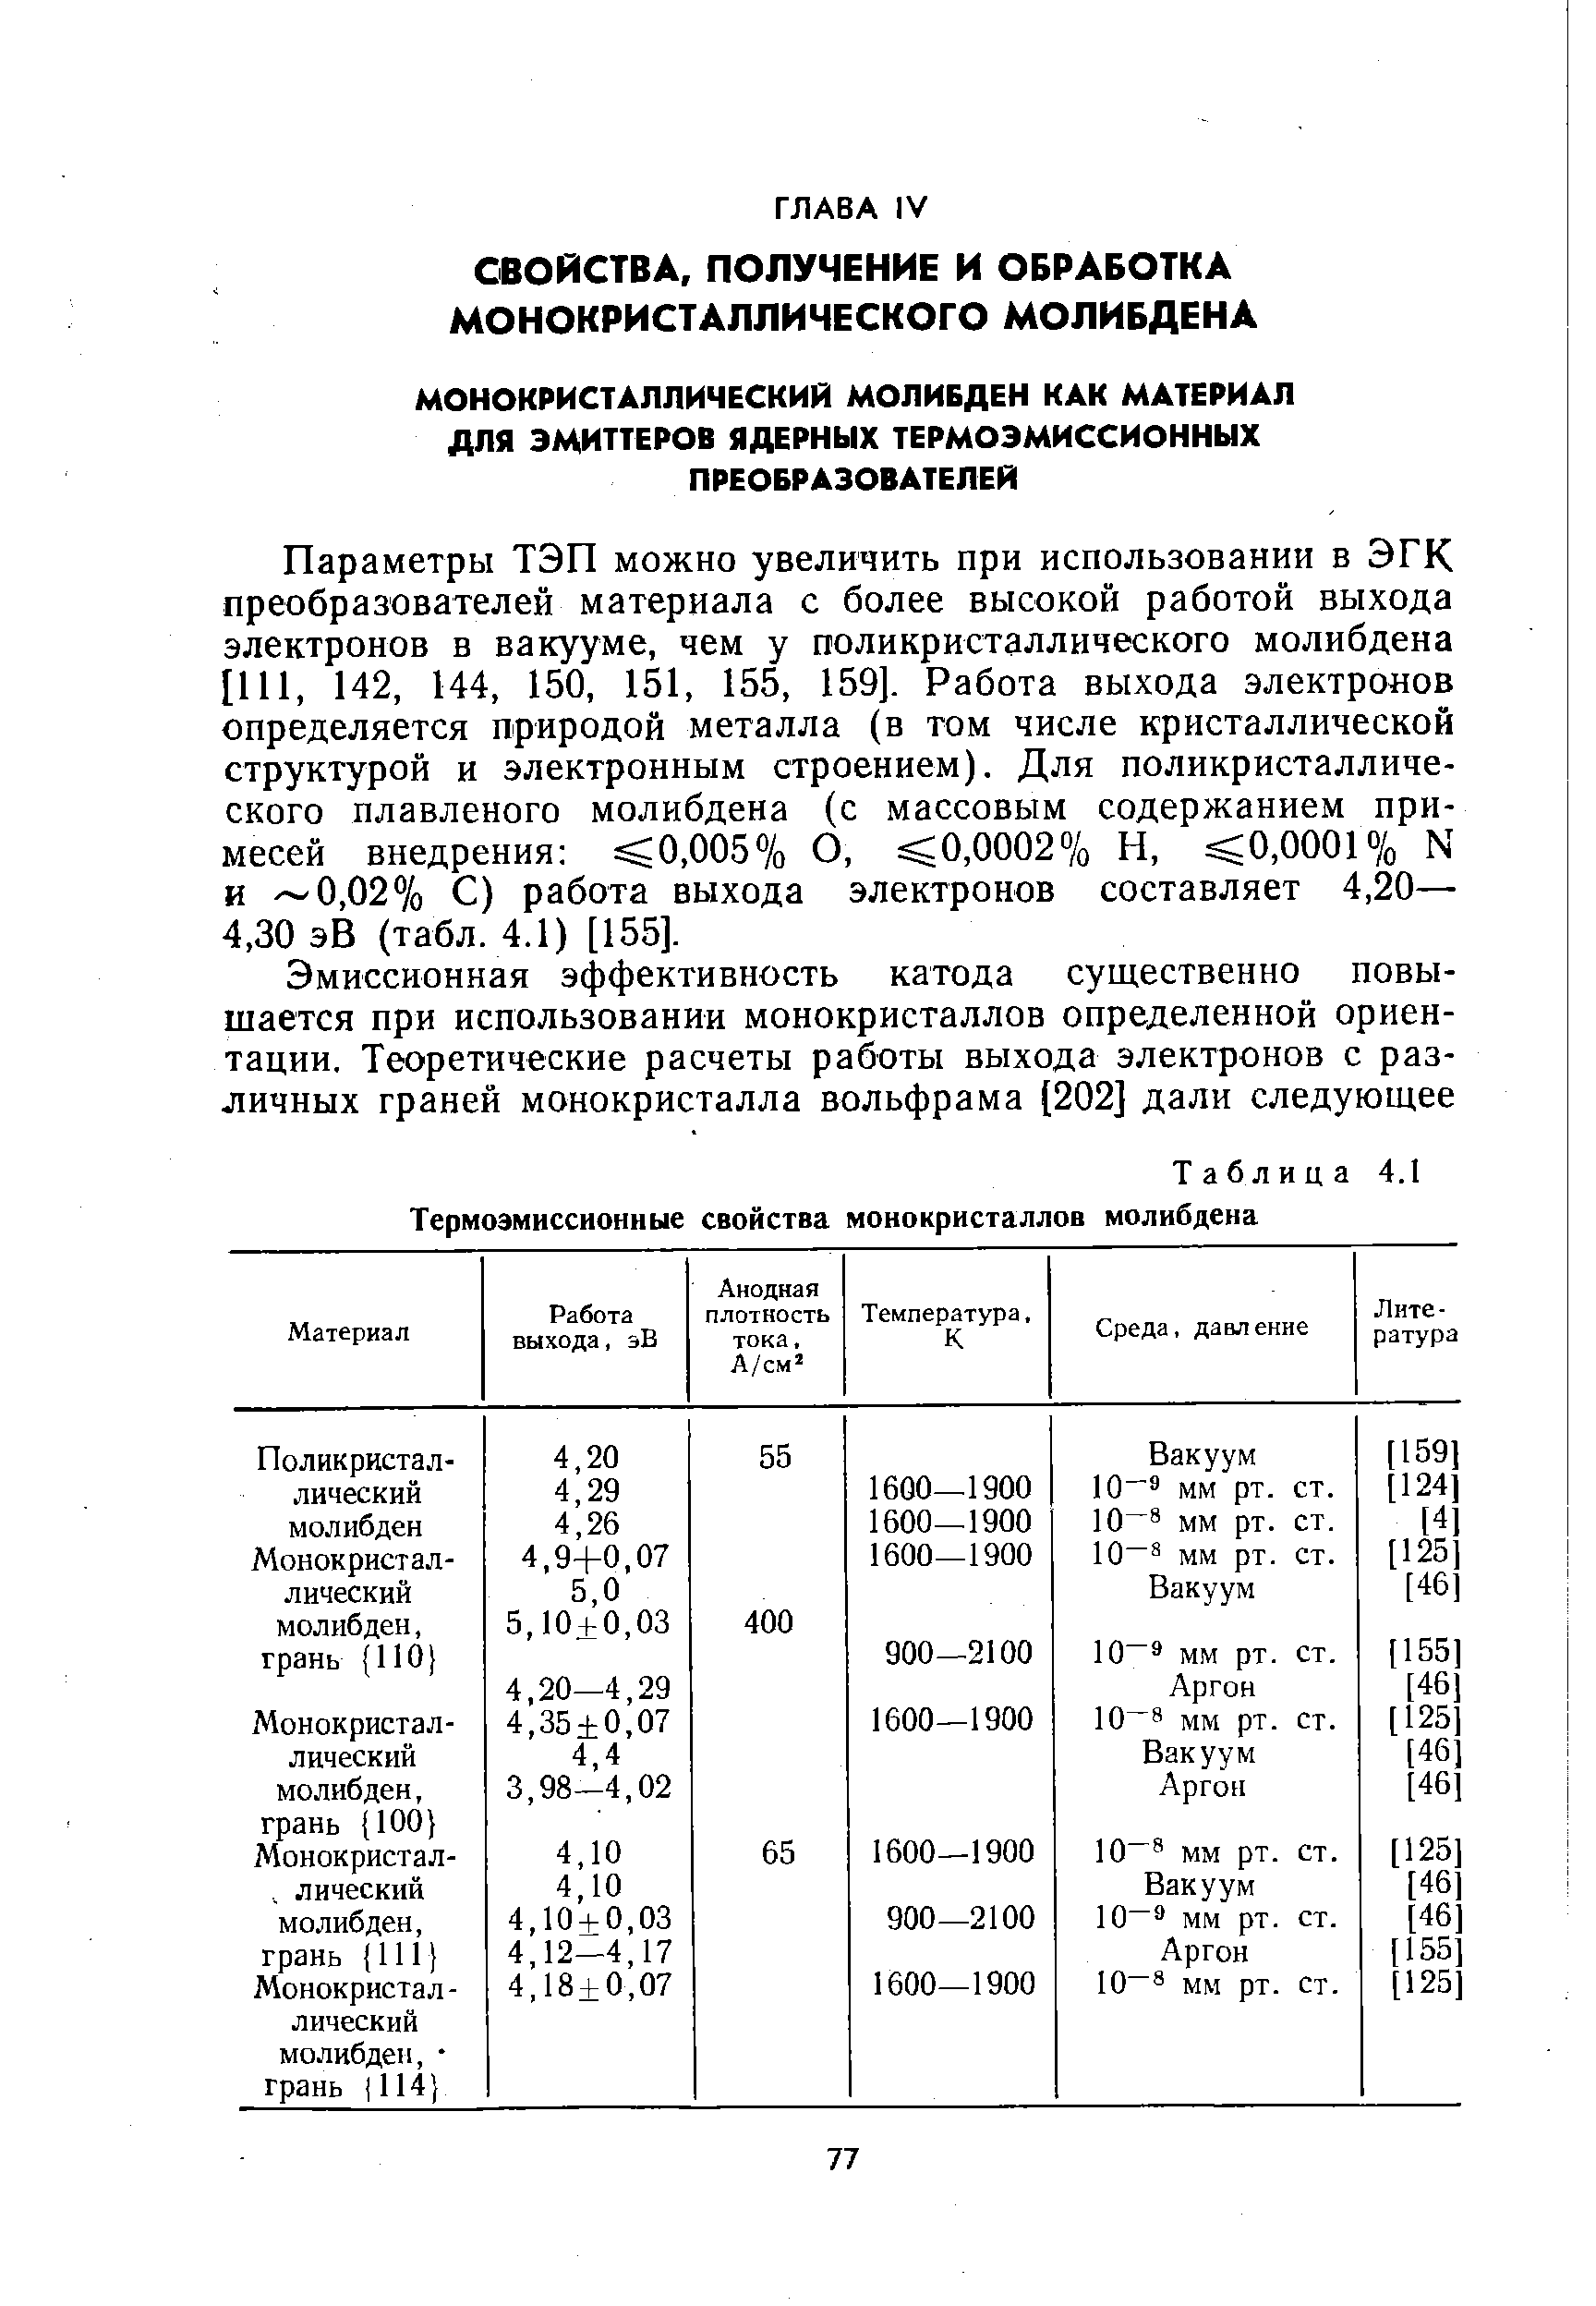 Таблица 4.1 Термоэмиссионные свойства монокристаллов молибдена
